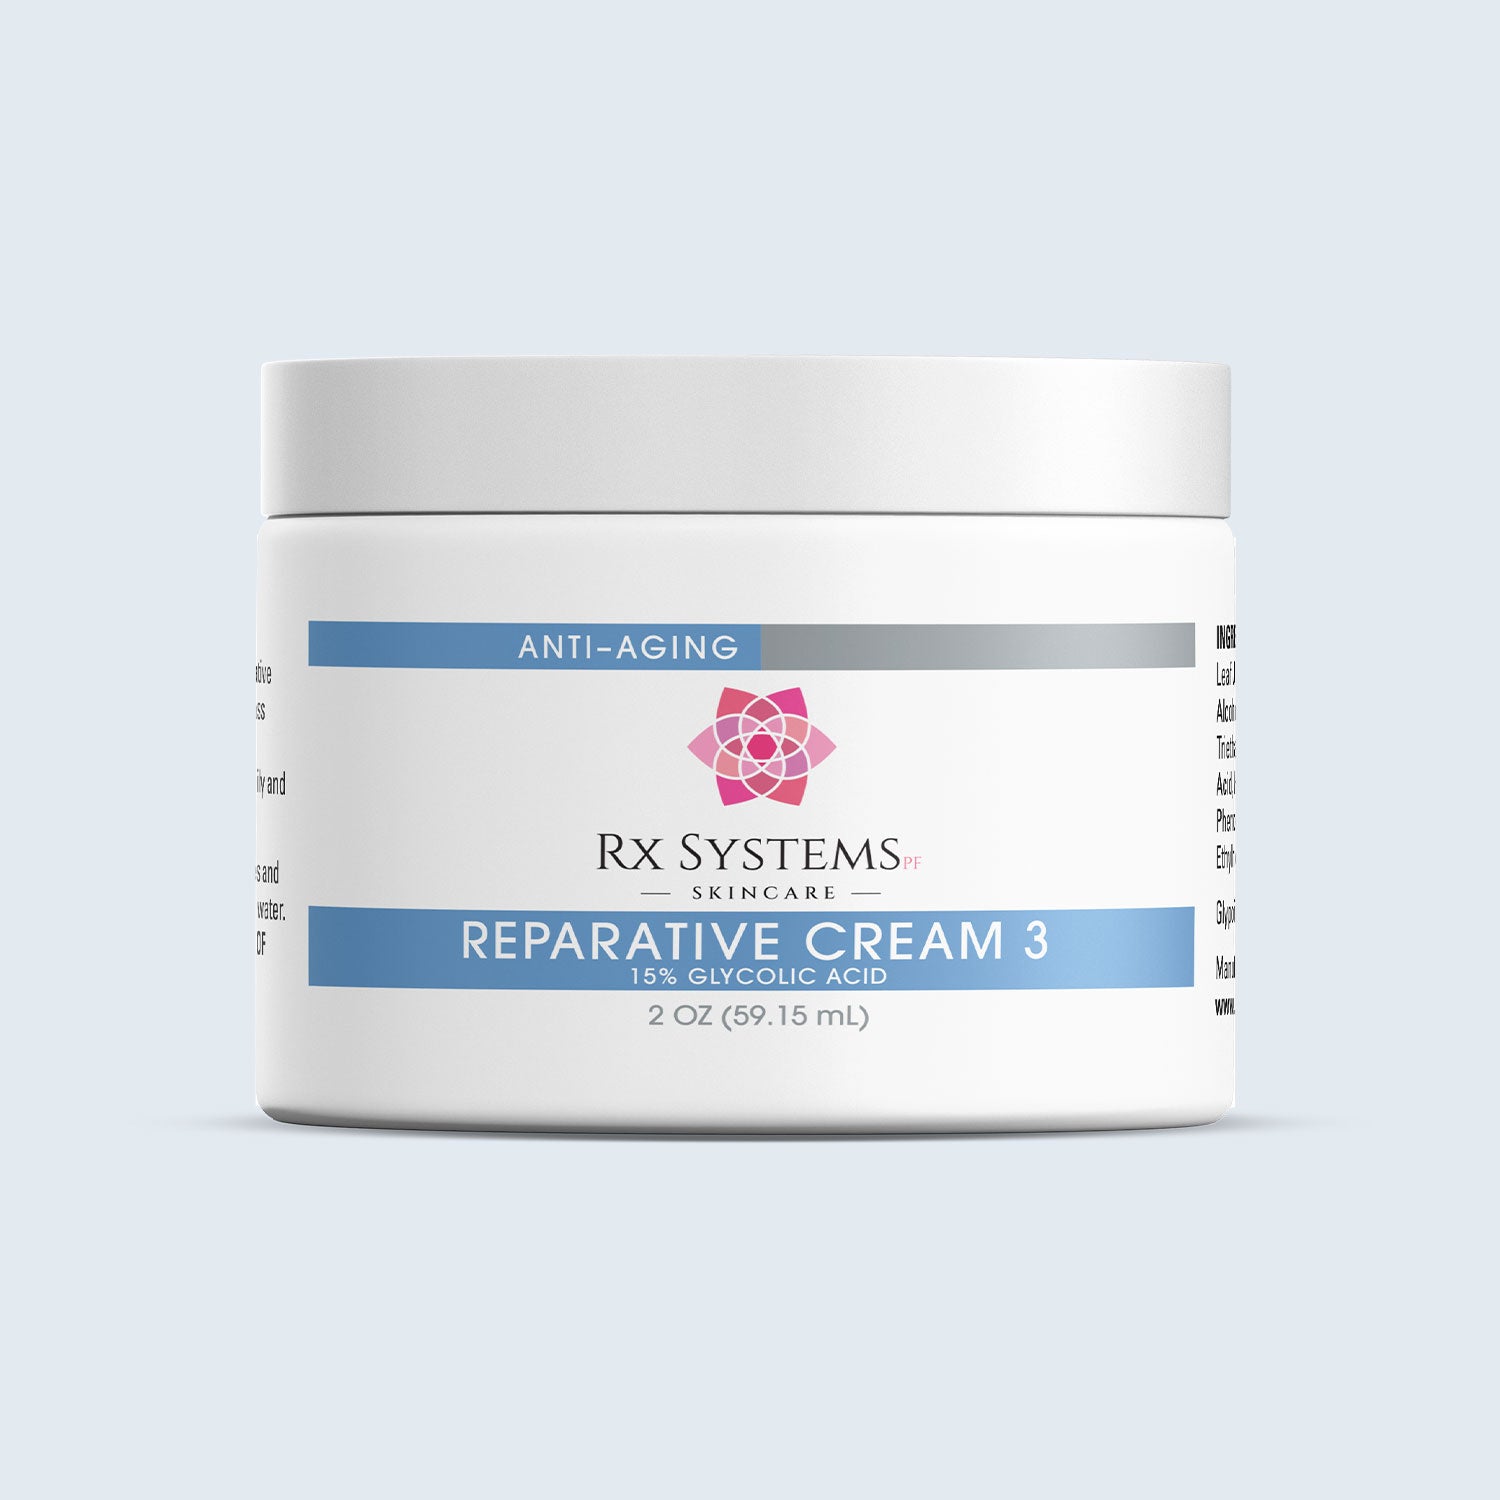 Reparative Cream 3